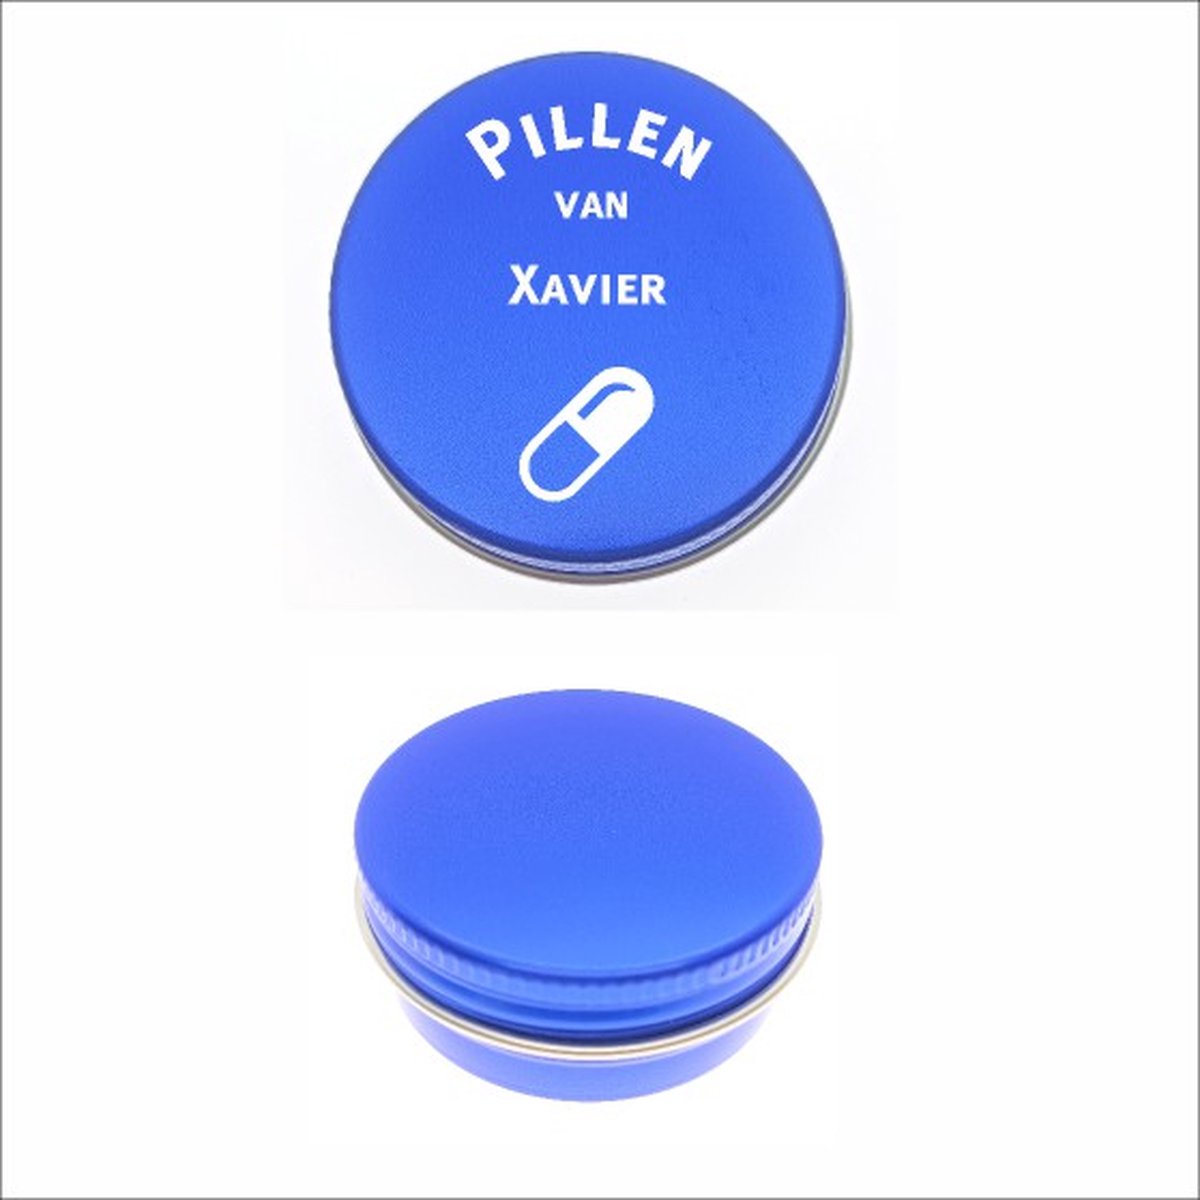 Pillen Blikje Met Naam Gravering - Xavier